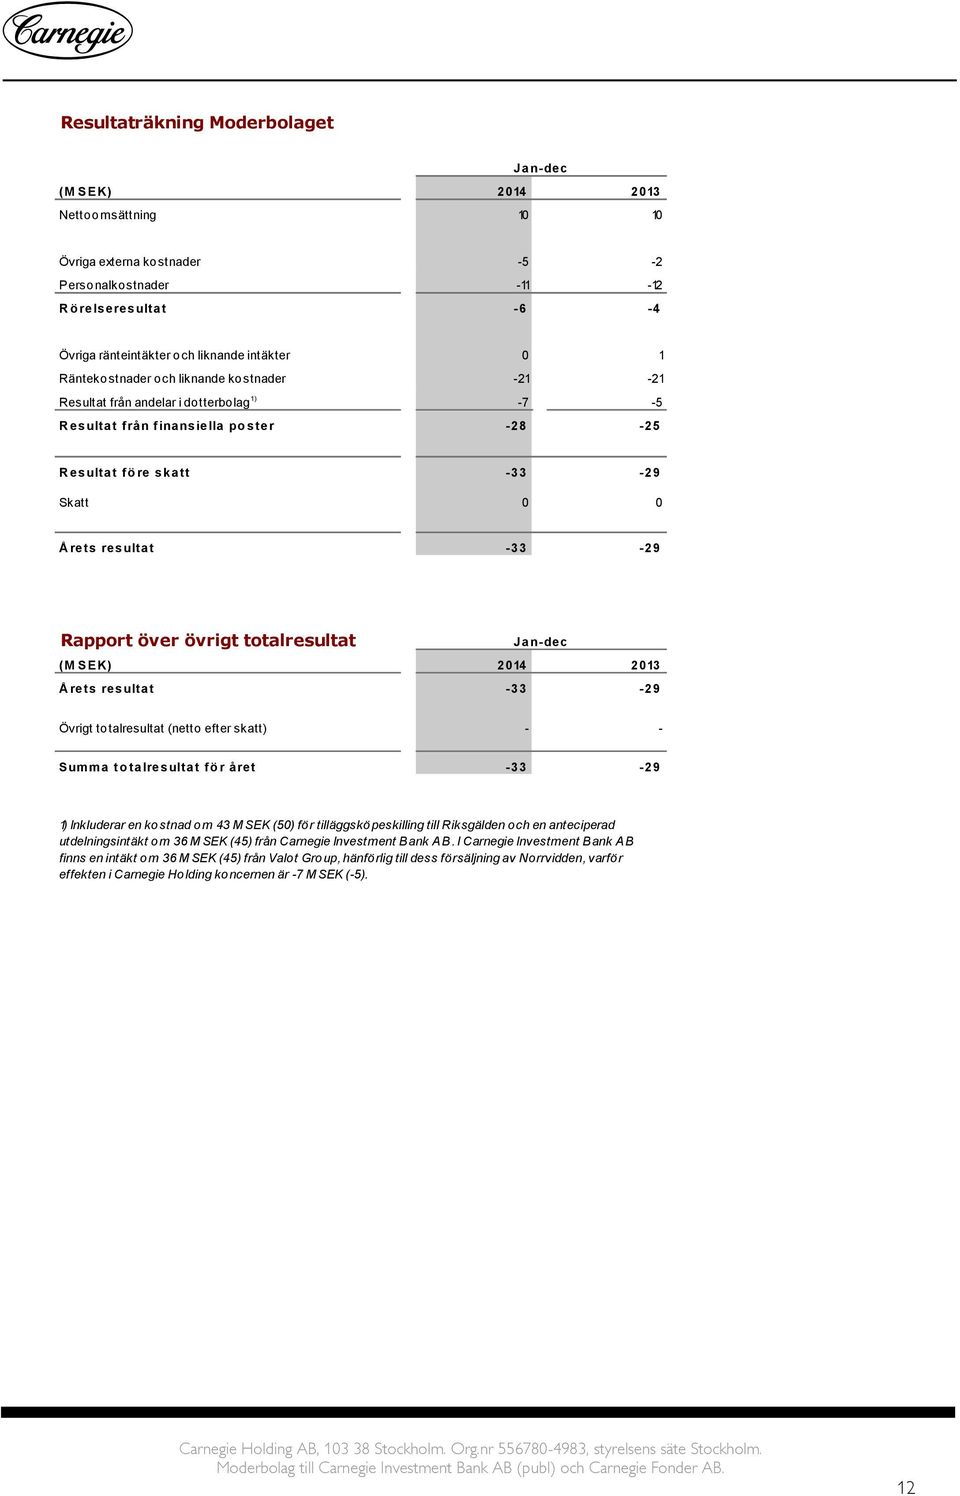 Rapport över övrigt totalresultat Jan-dec (M SEK) 2014 2013 Å rets resultat -33-29 Övrigt totalresultat (netto efter skatt) - - Summa to talresultat fö r året -33-29 1) Inkluderar en kostnad om 43 M